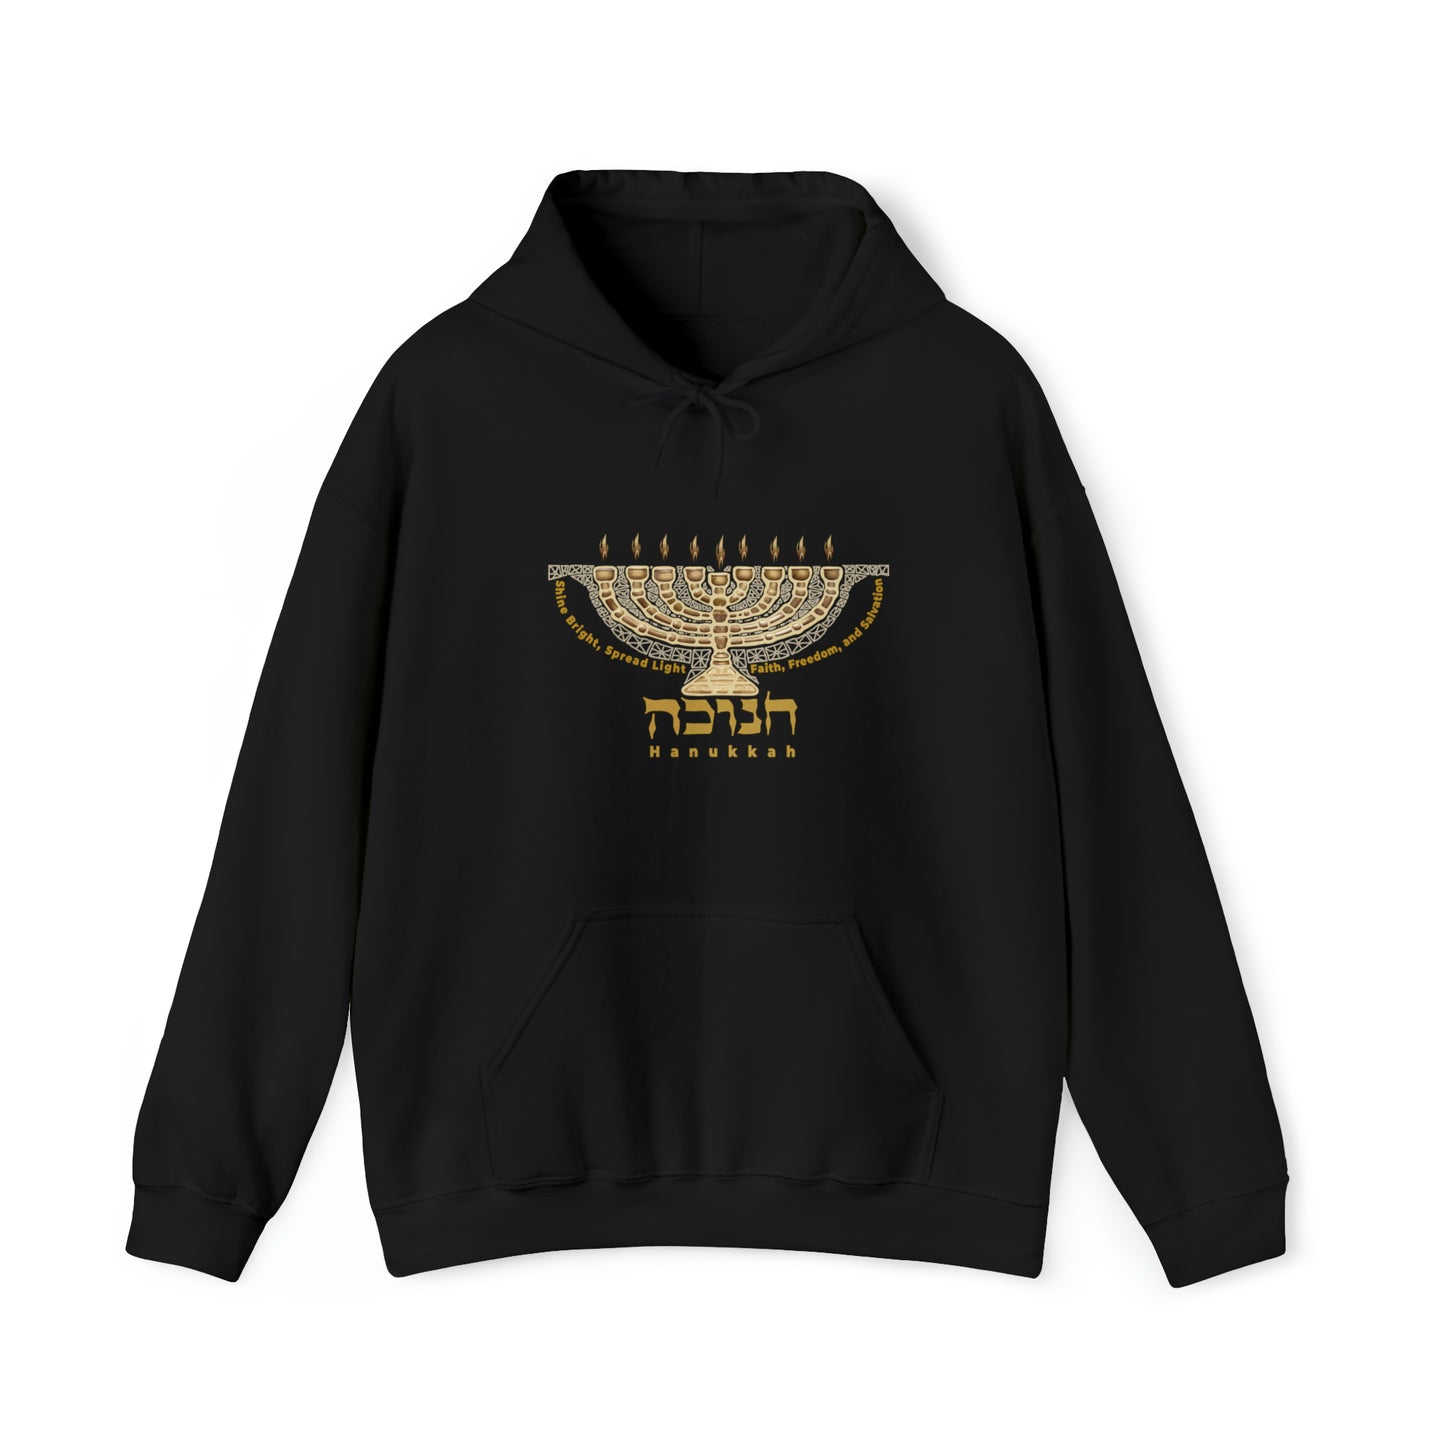 Hanukkah / Hooded Sweatshirt